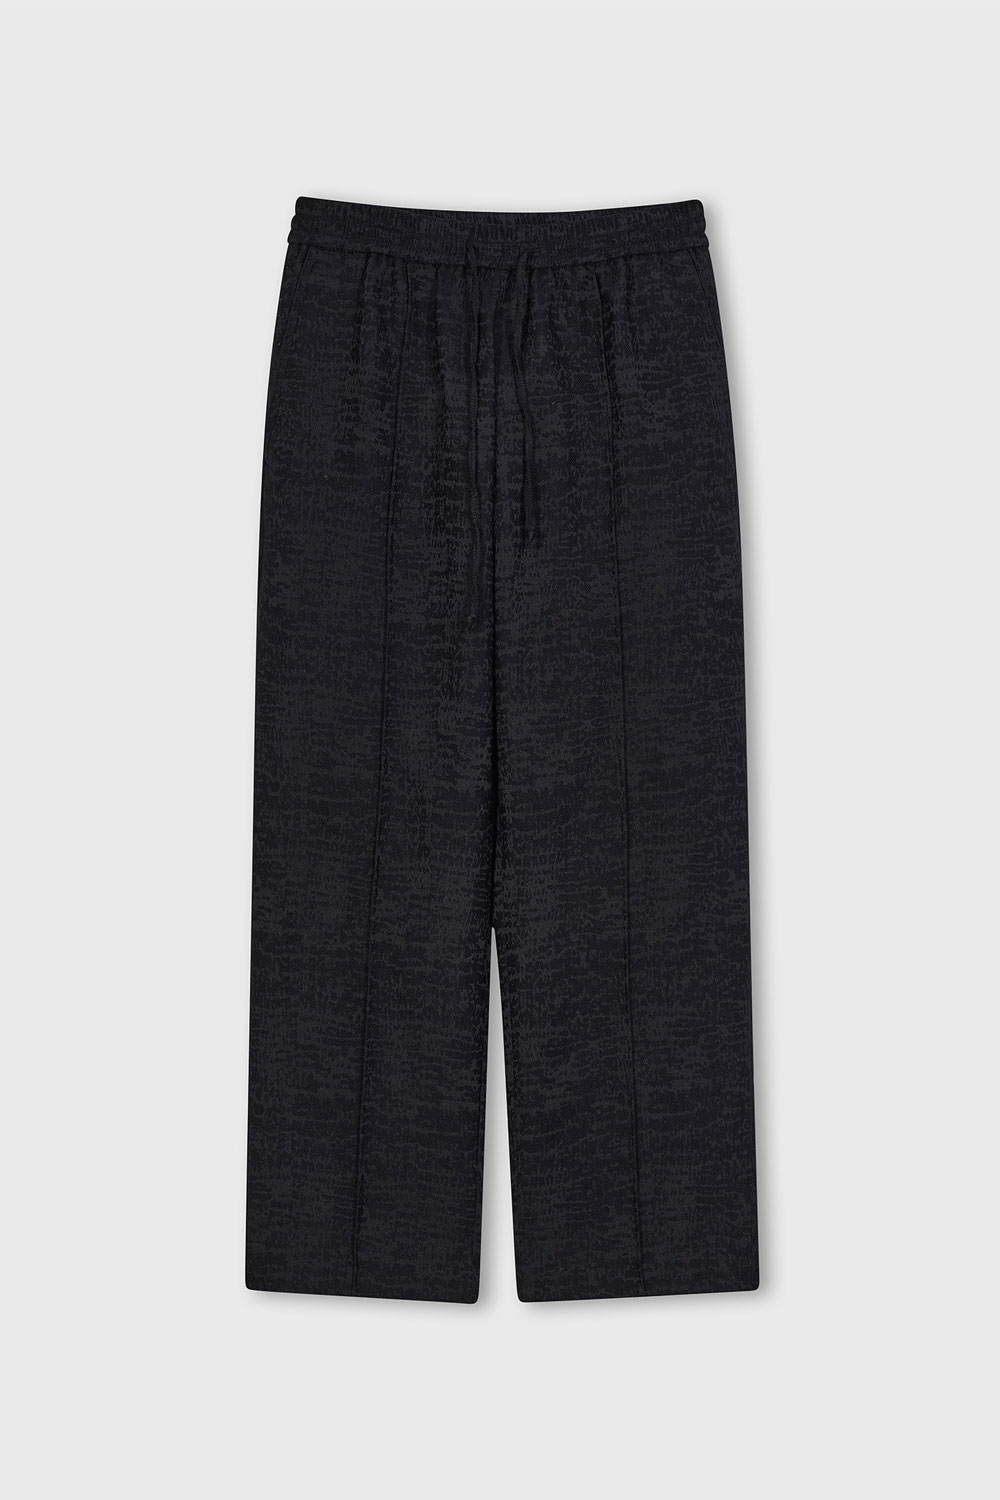 Jacquard Pajama Pants (Black)